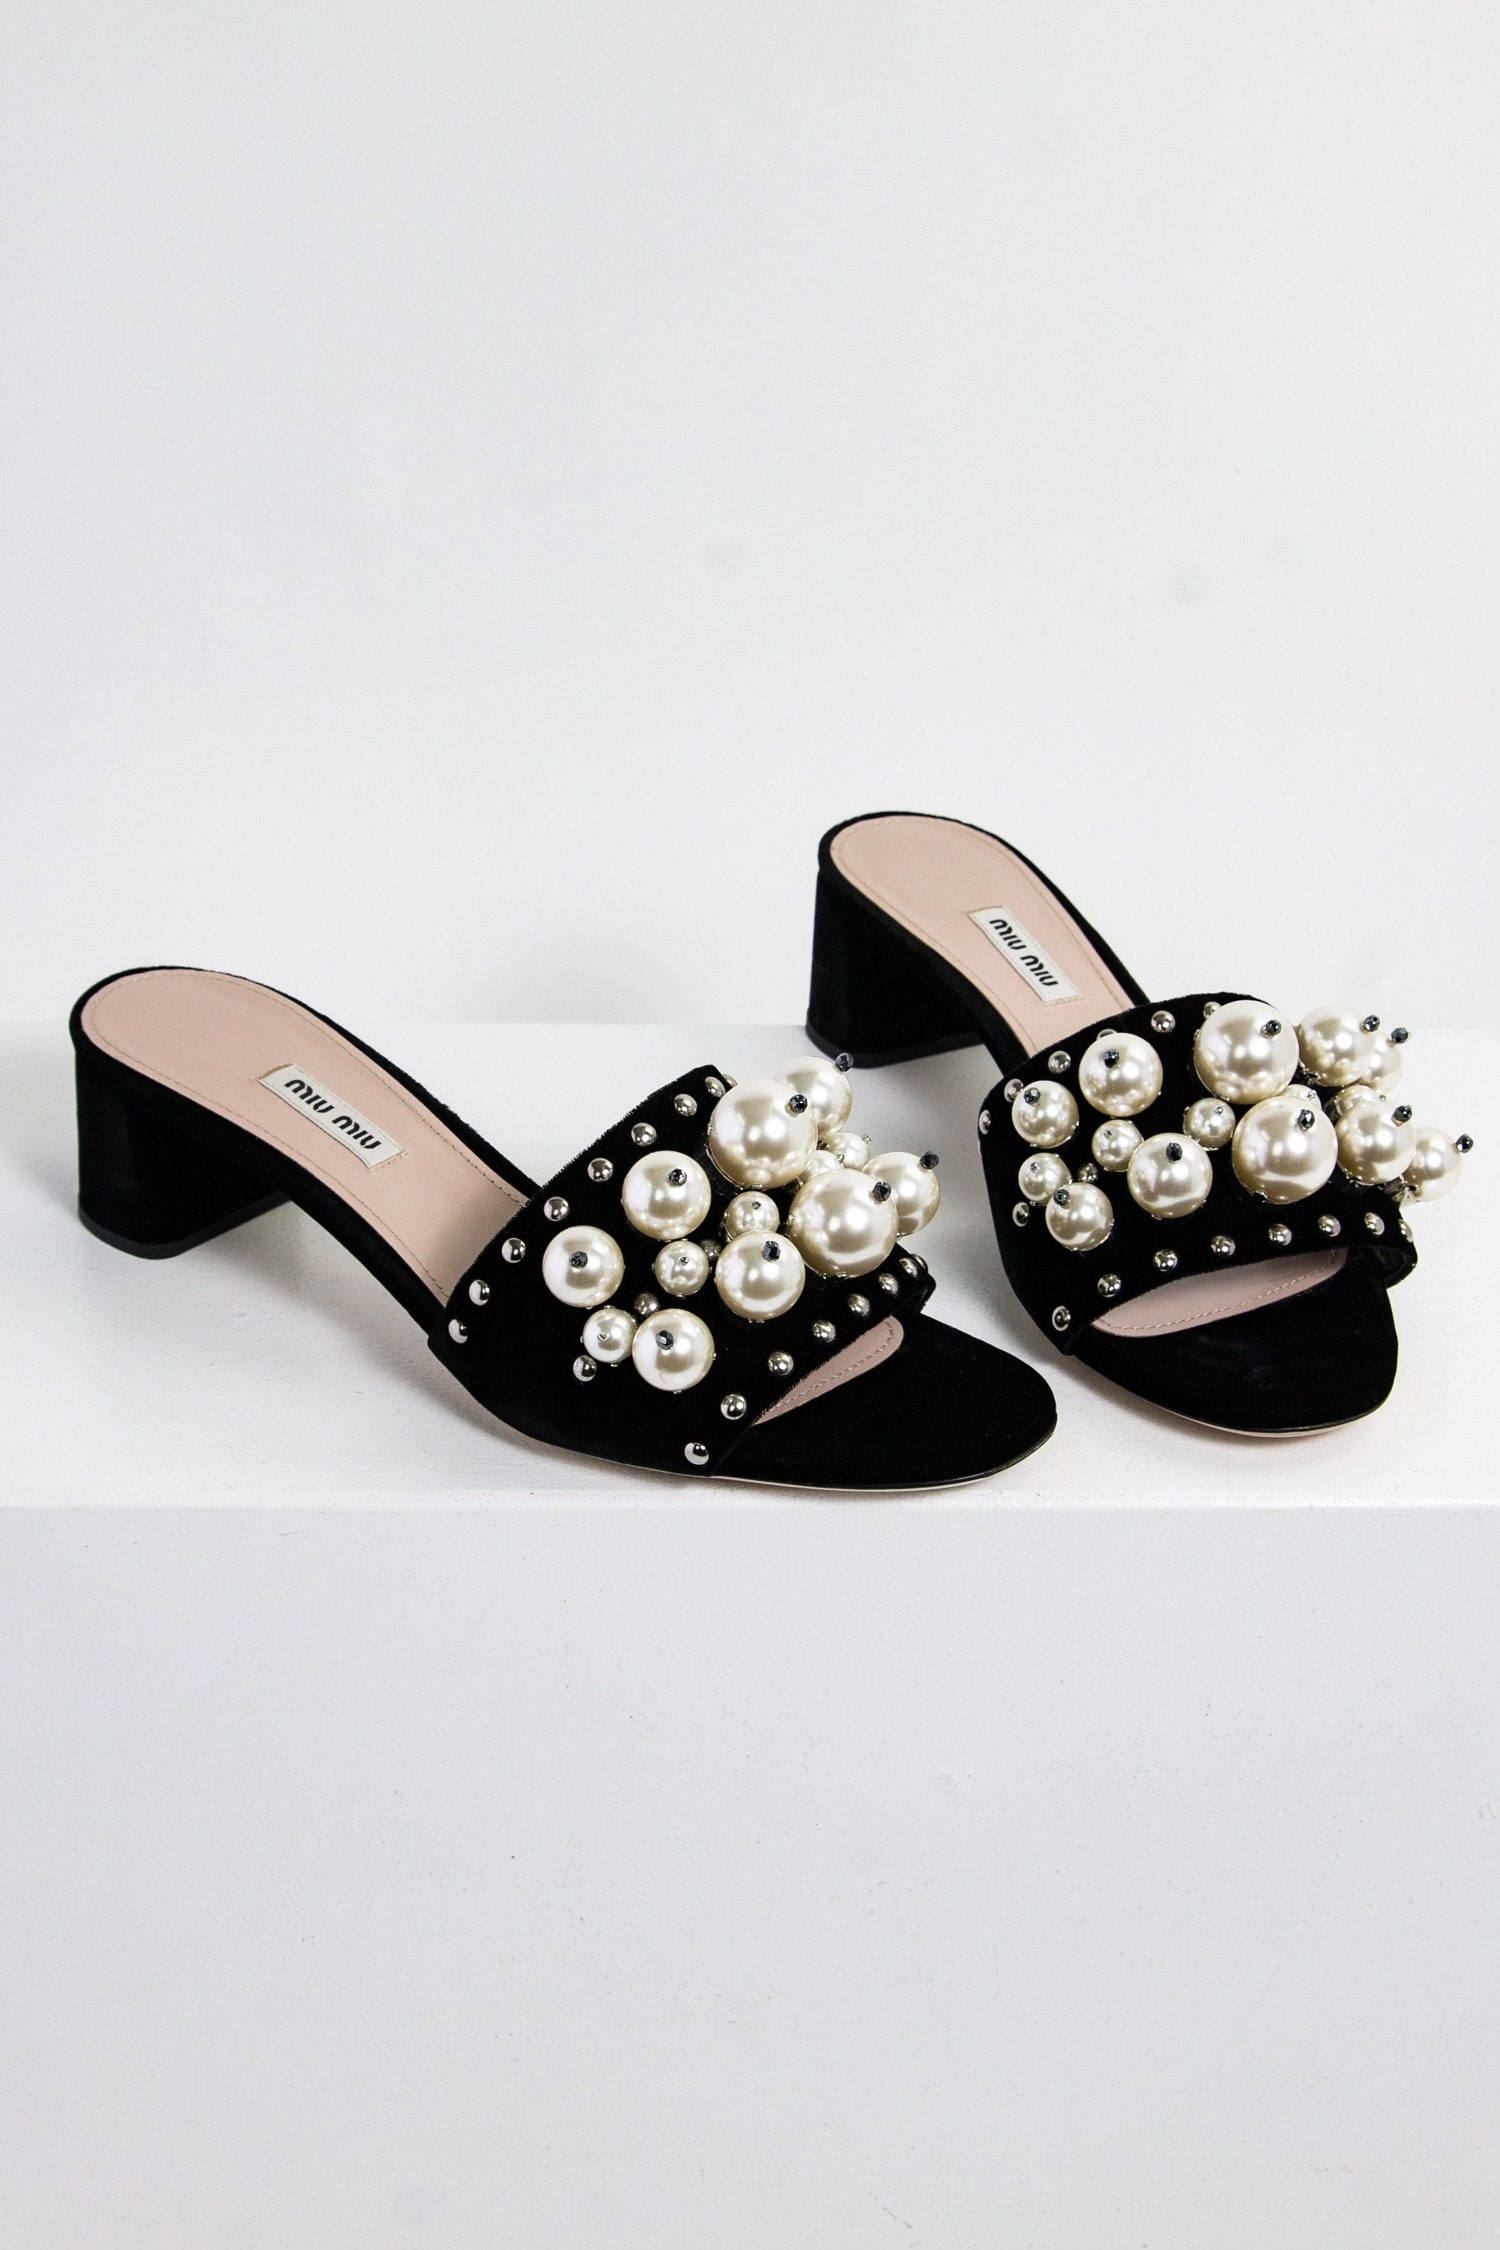 Miu Miu Sandaletten mit Perlenverzierung in schwarz